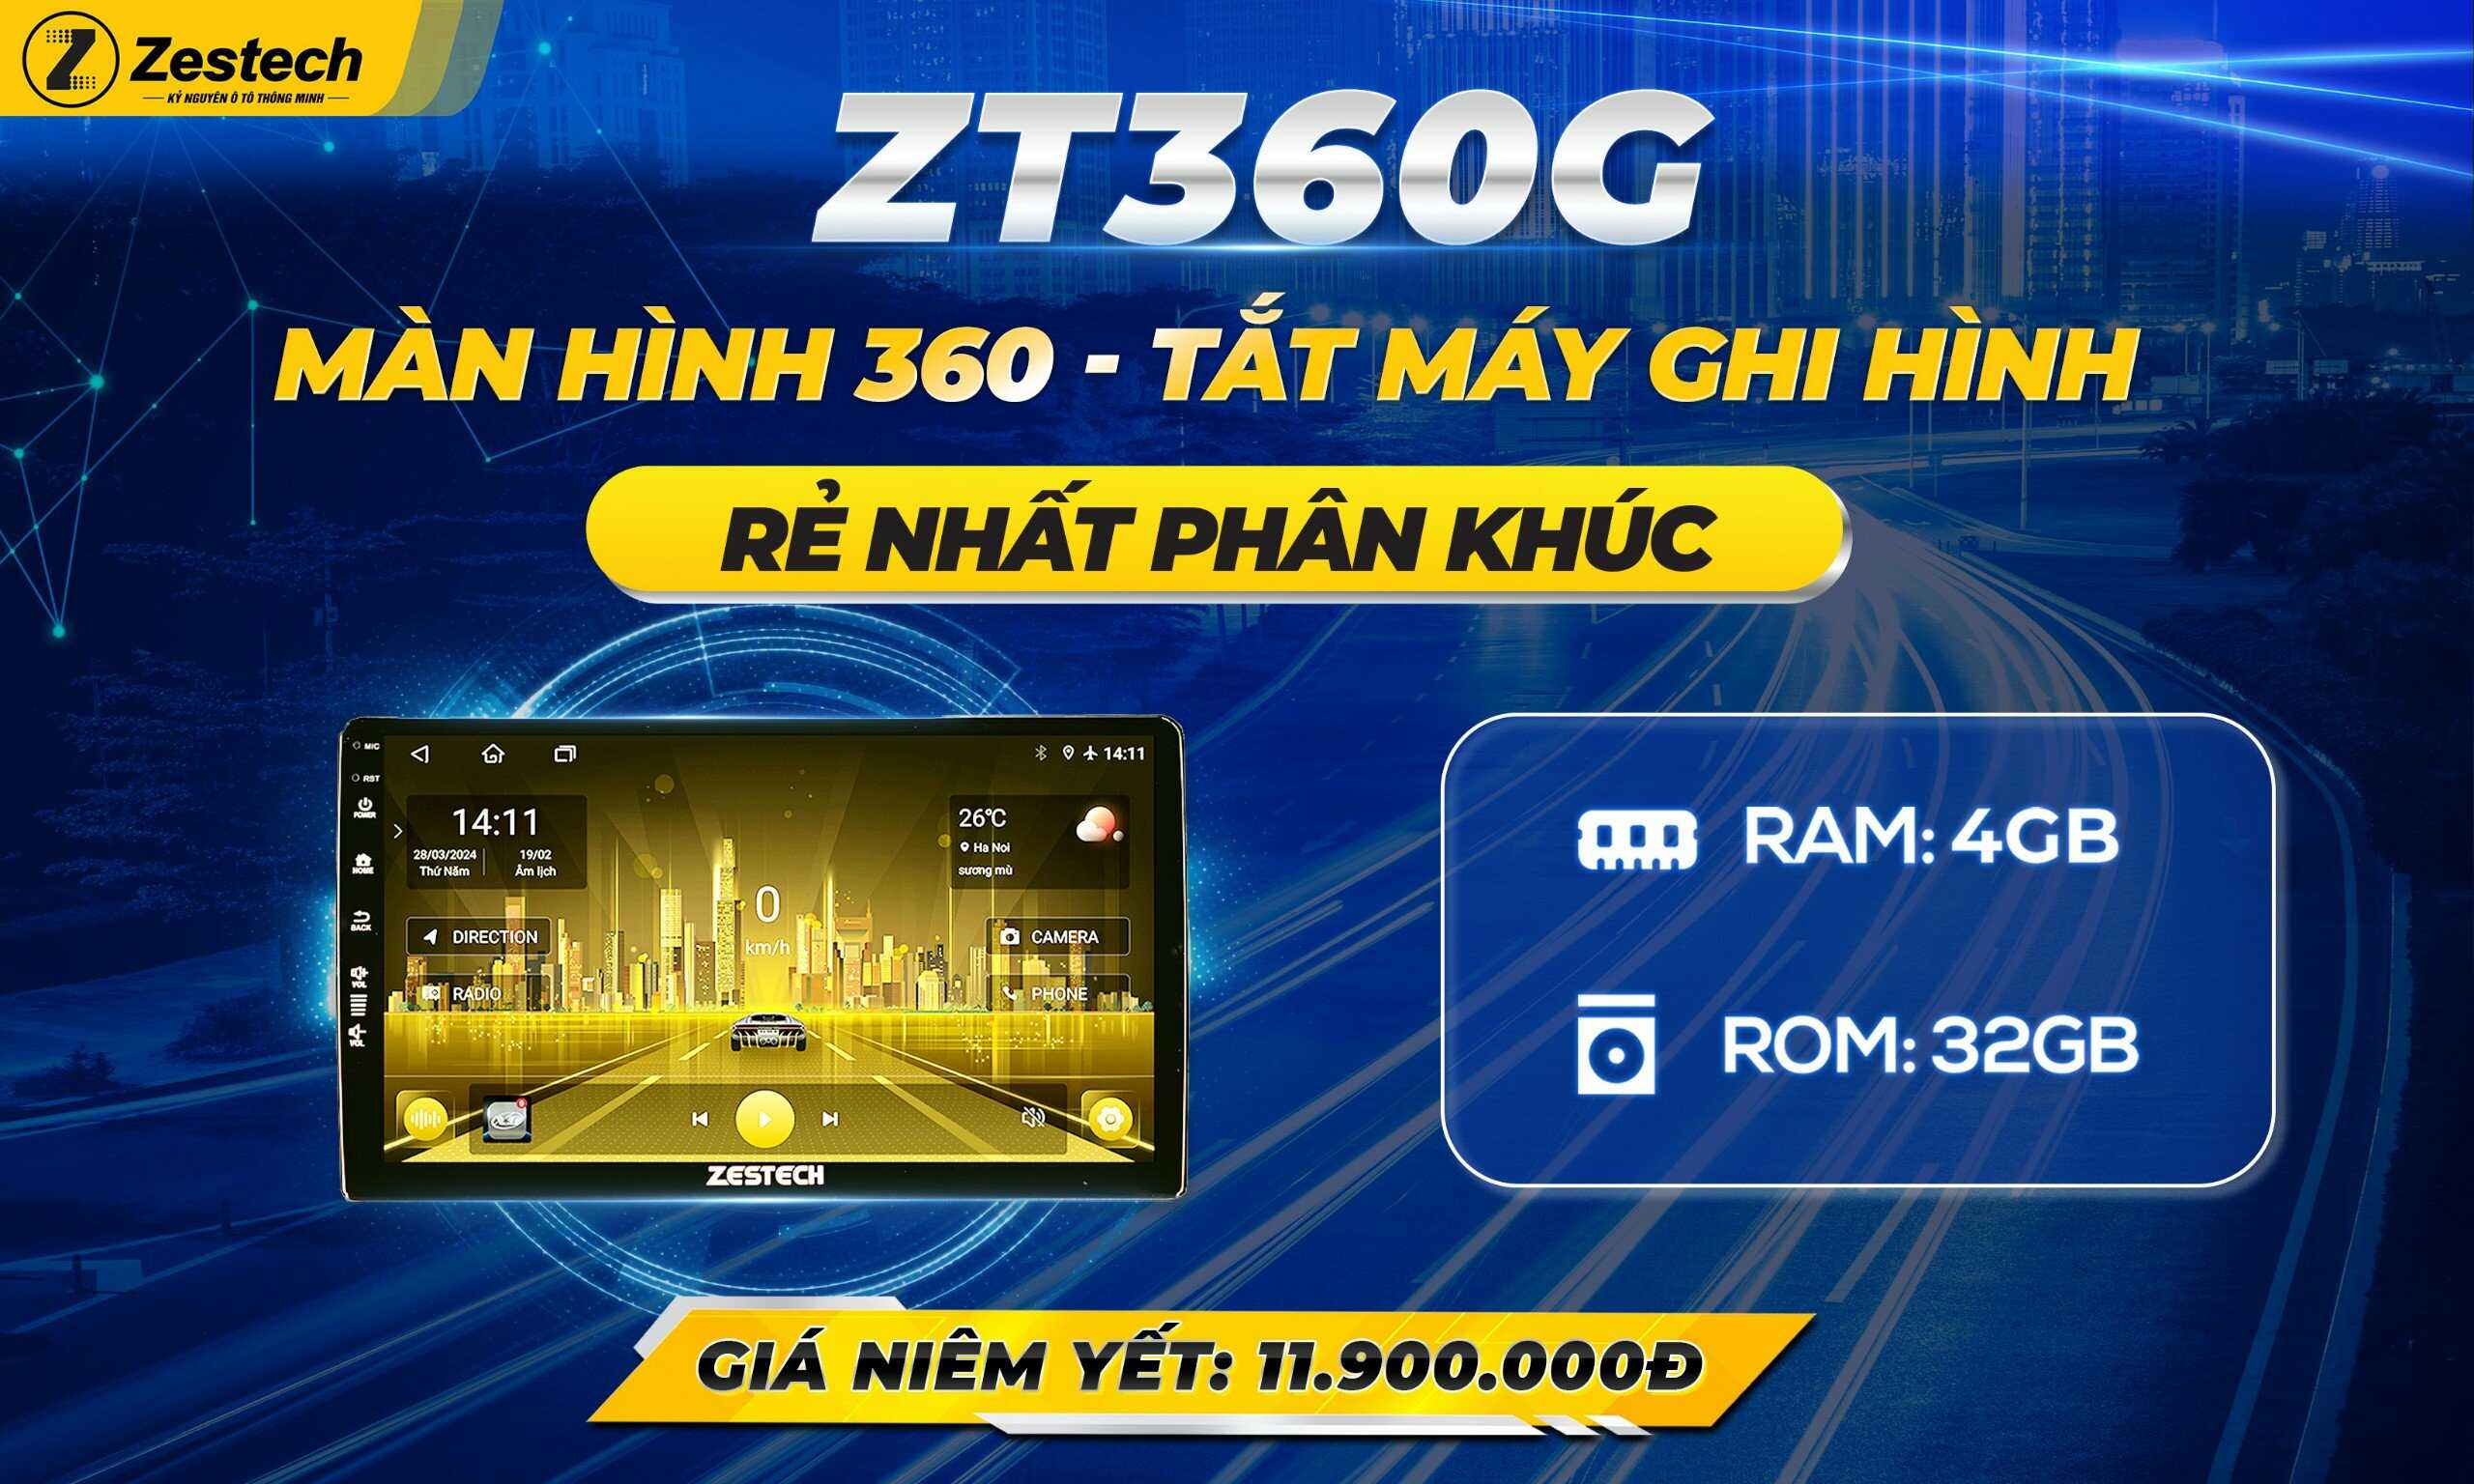 Zestech ZT360G: Màn hình 360 Tắt máy ghi hình - Rẻ nhất phân khúc